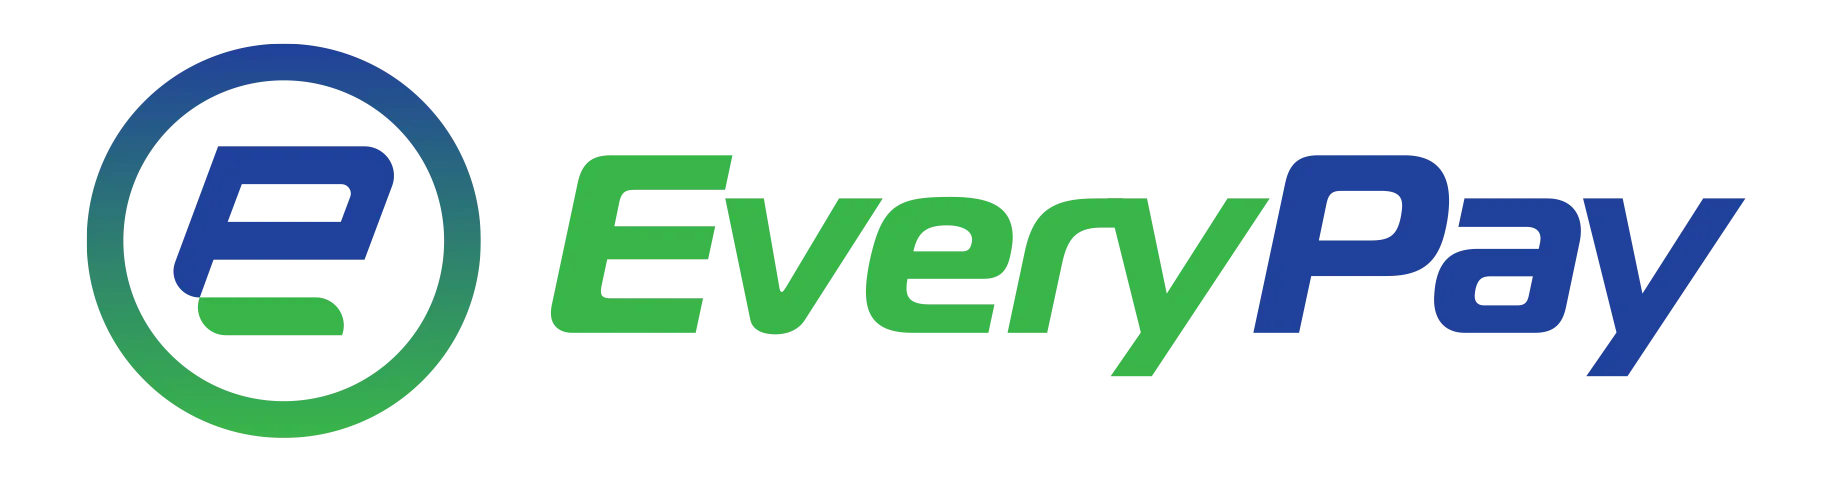 Everypay logo